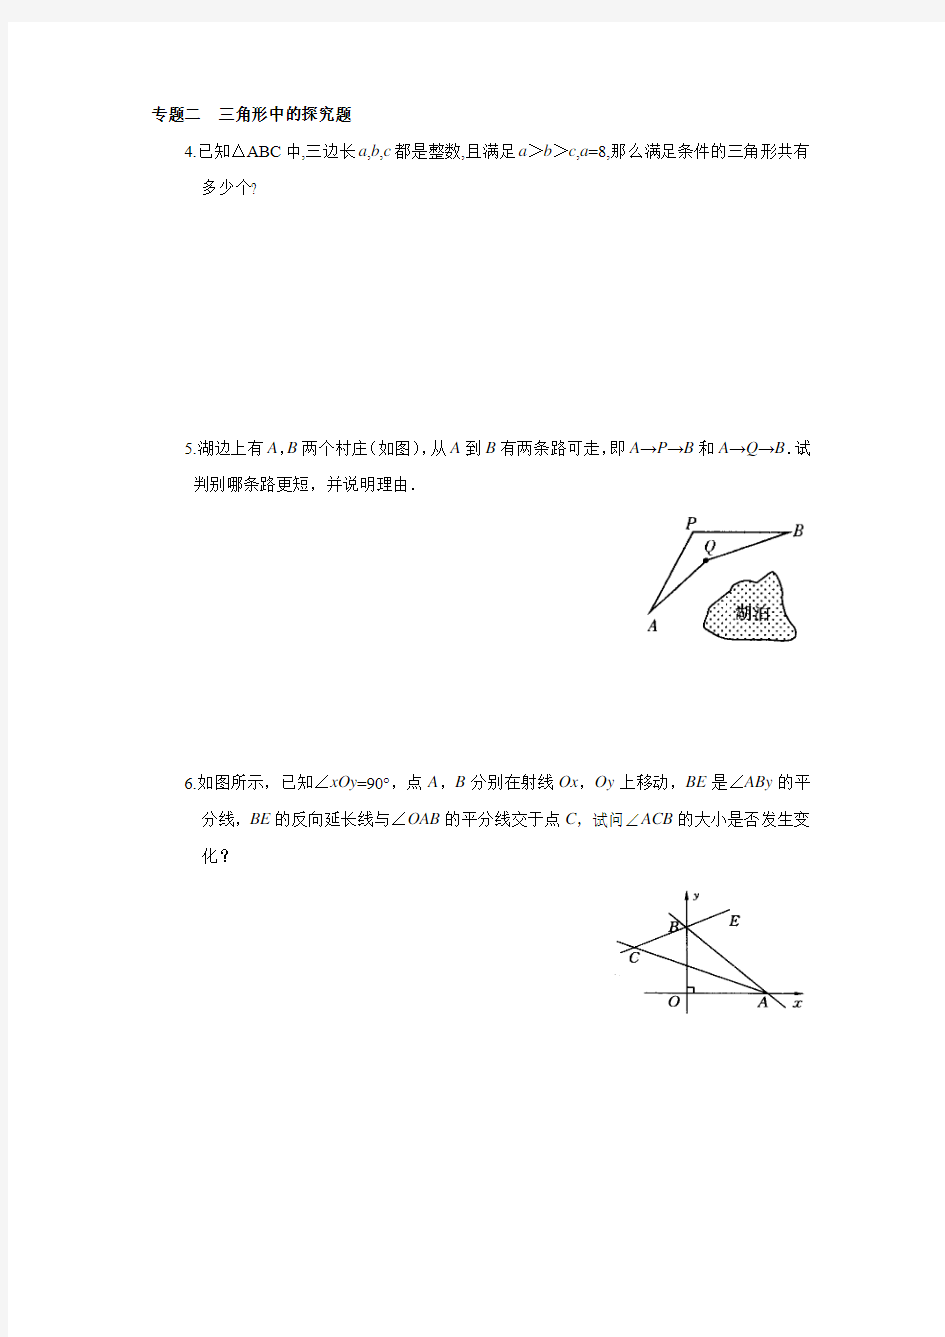 13.1 三角形中的边角关系 能力培优训练(含答案)